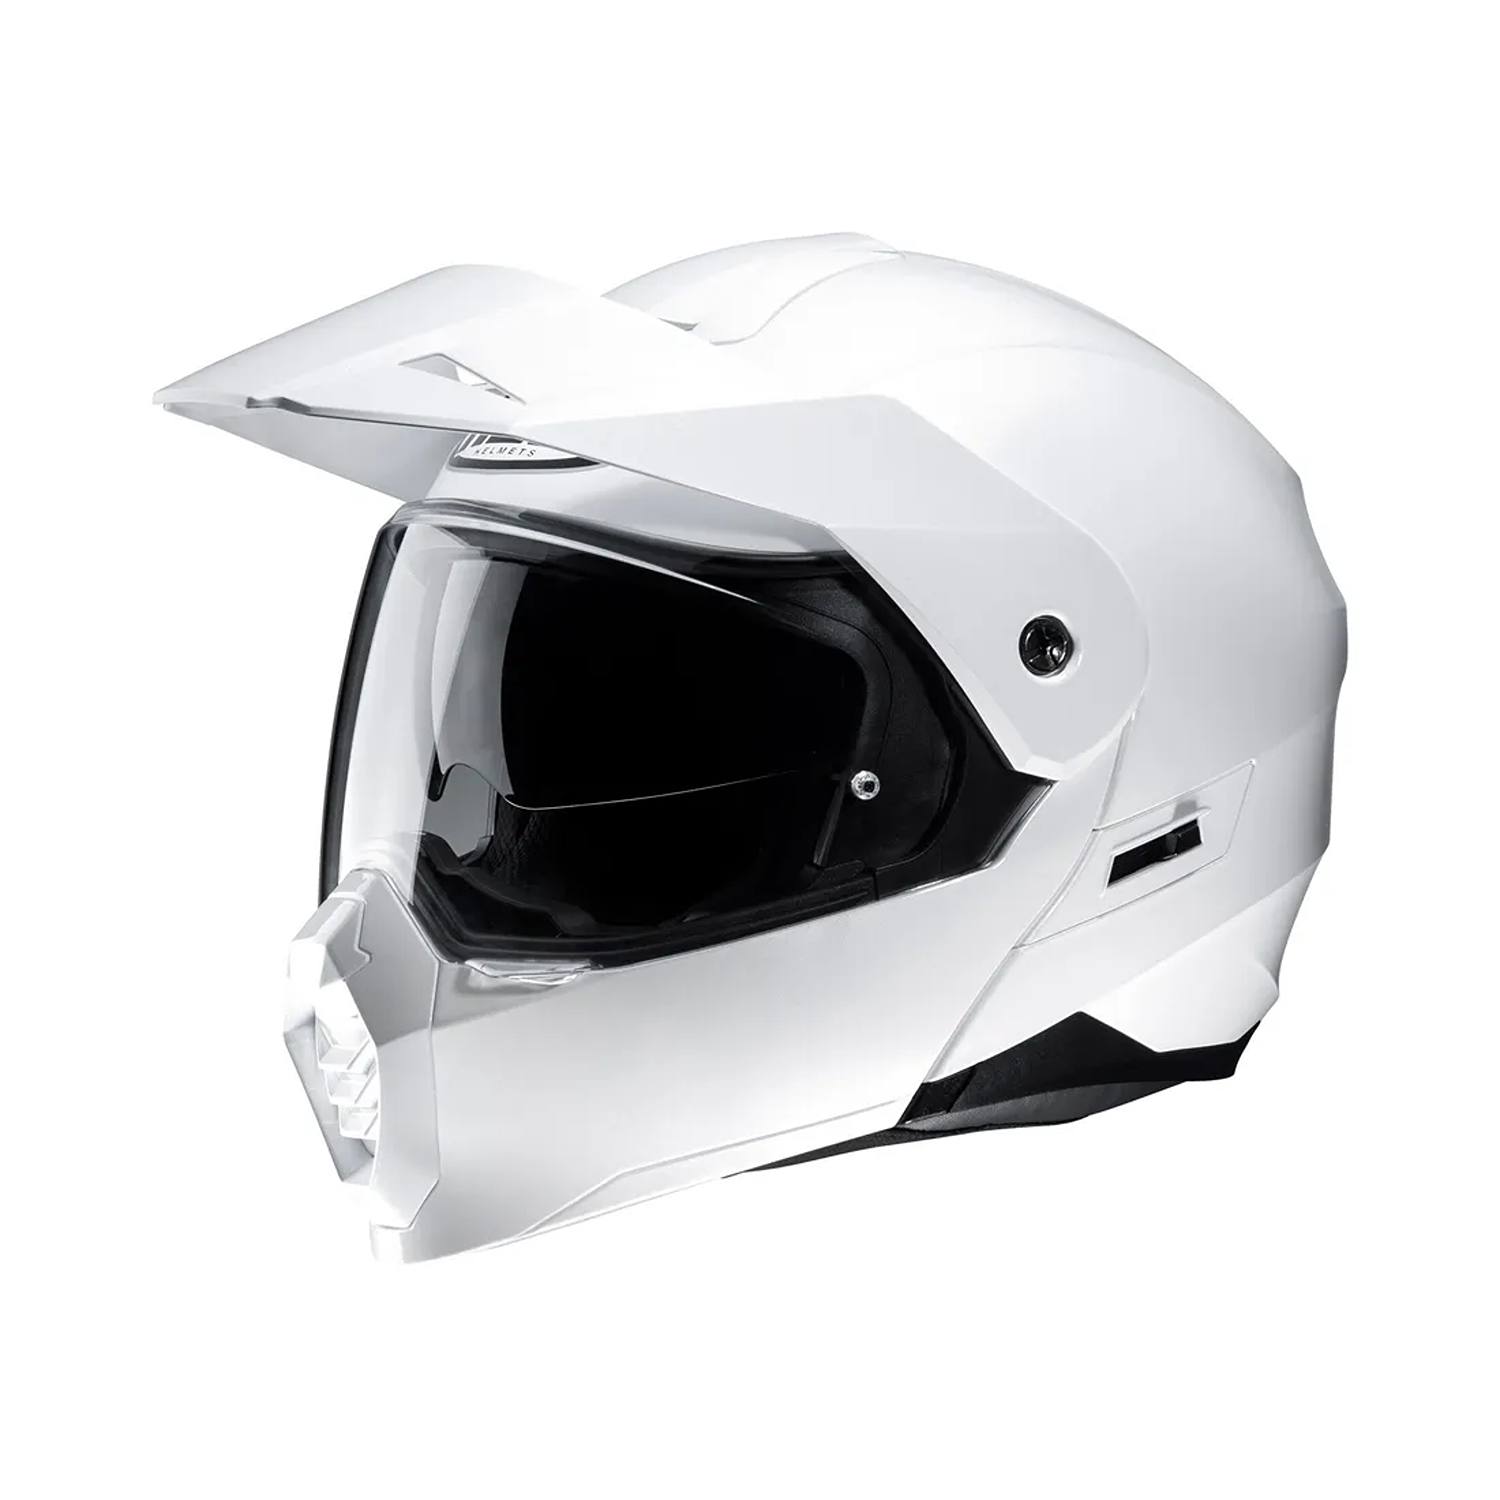 Image of HJC C80 White Adventure Helmet Size XS ID 8804269898246